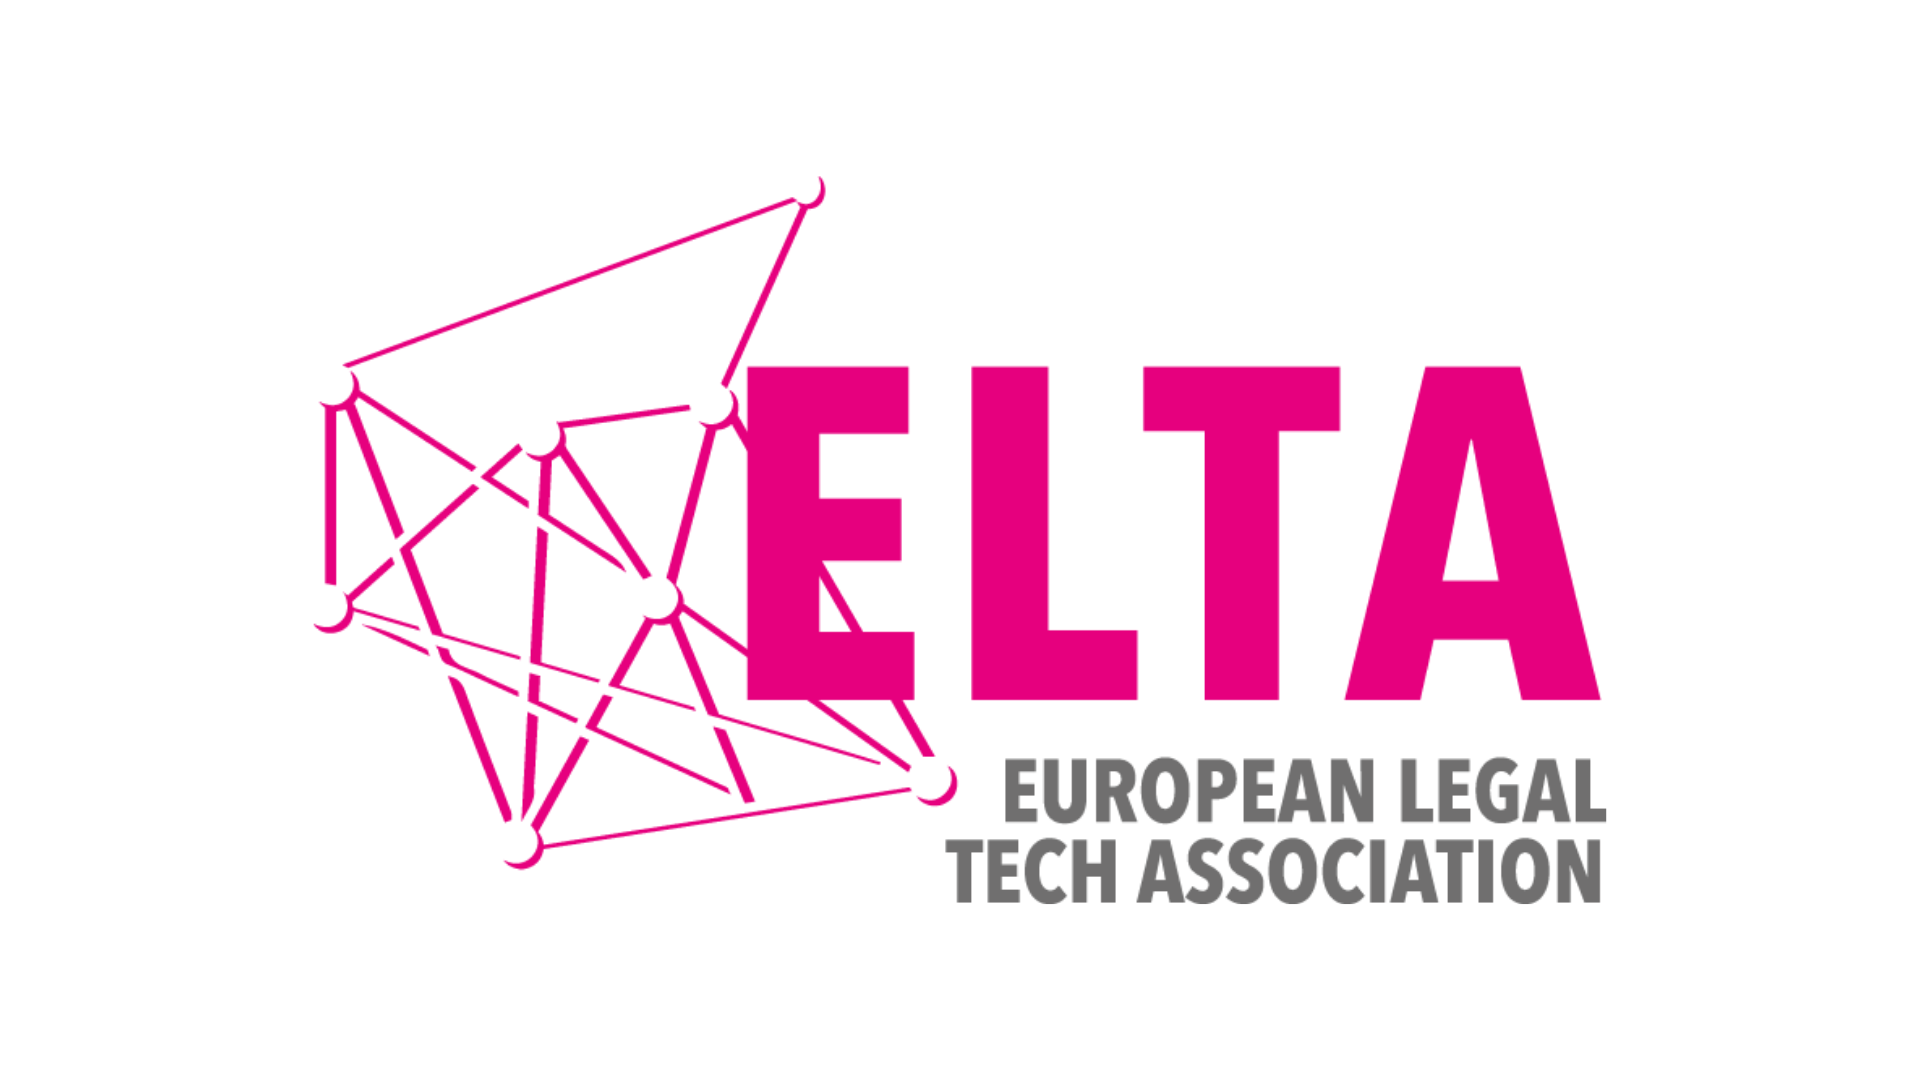 European Legaltech Association